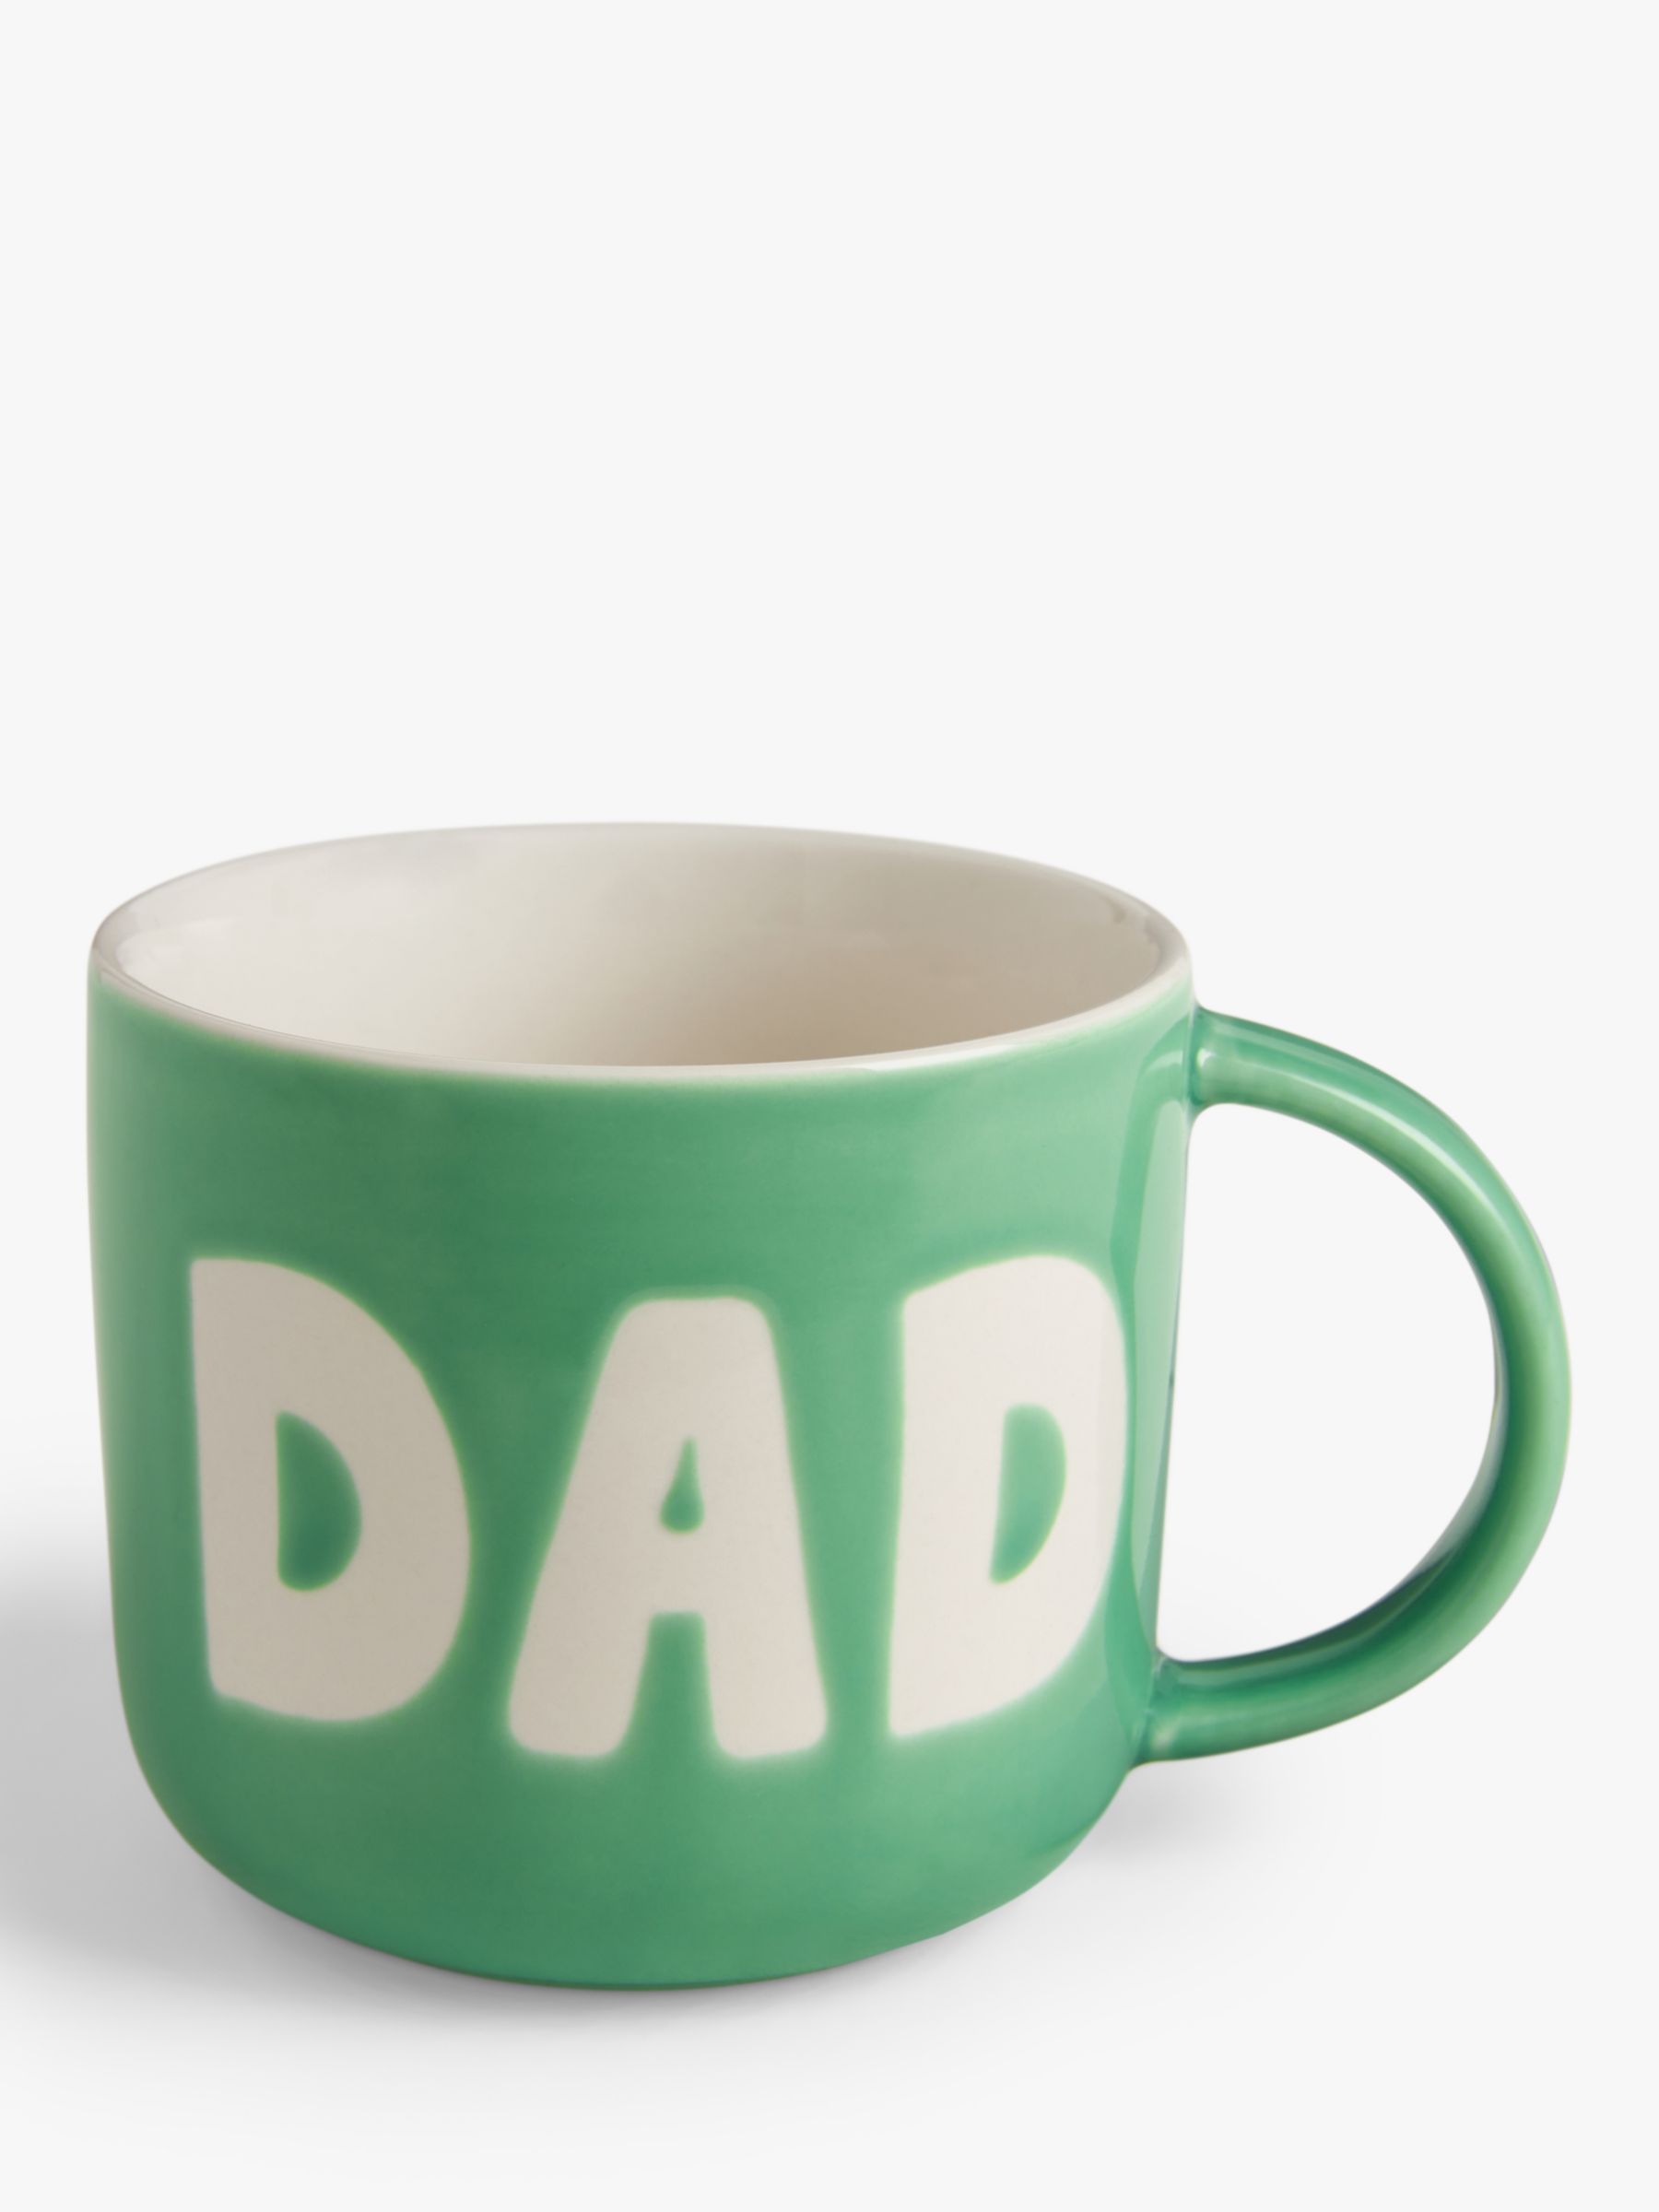 'Dad' Stoneware Mug, £6